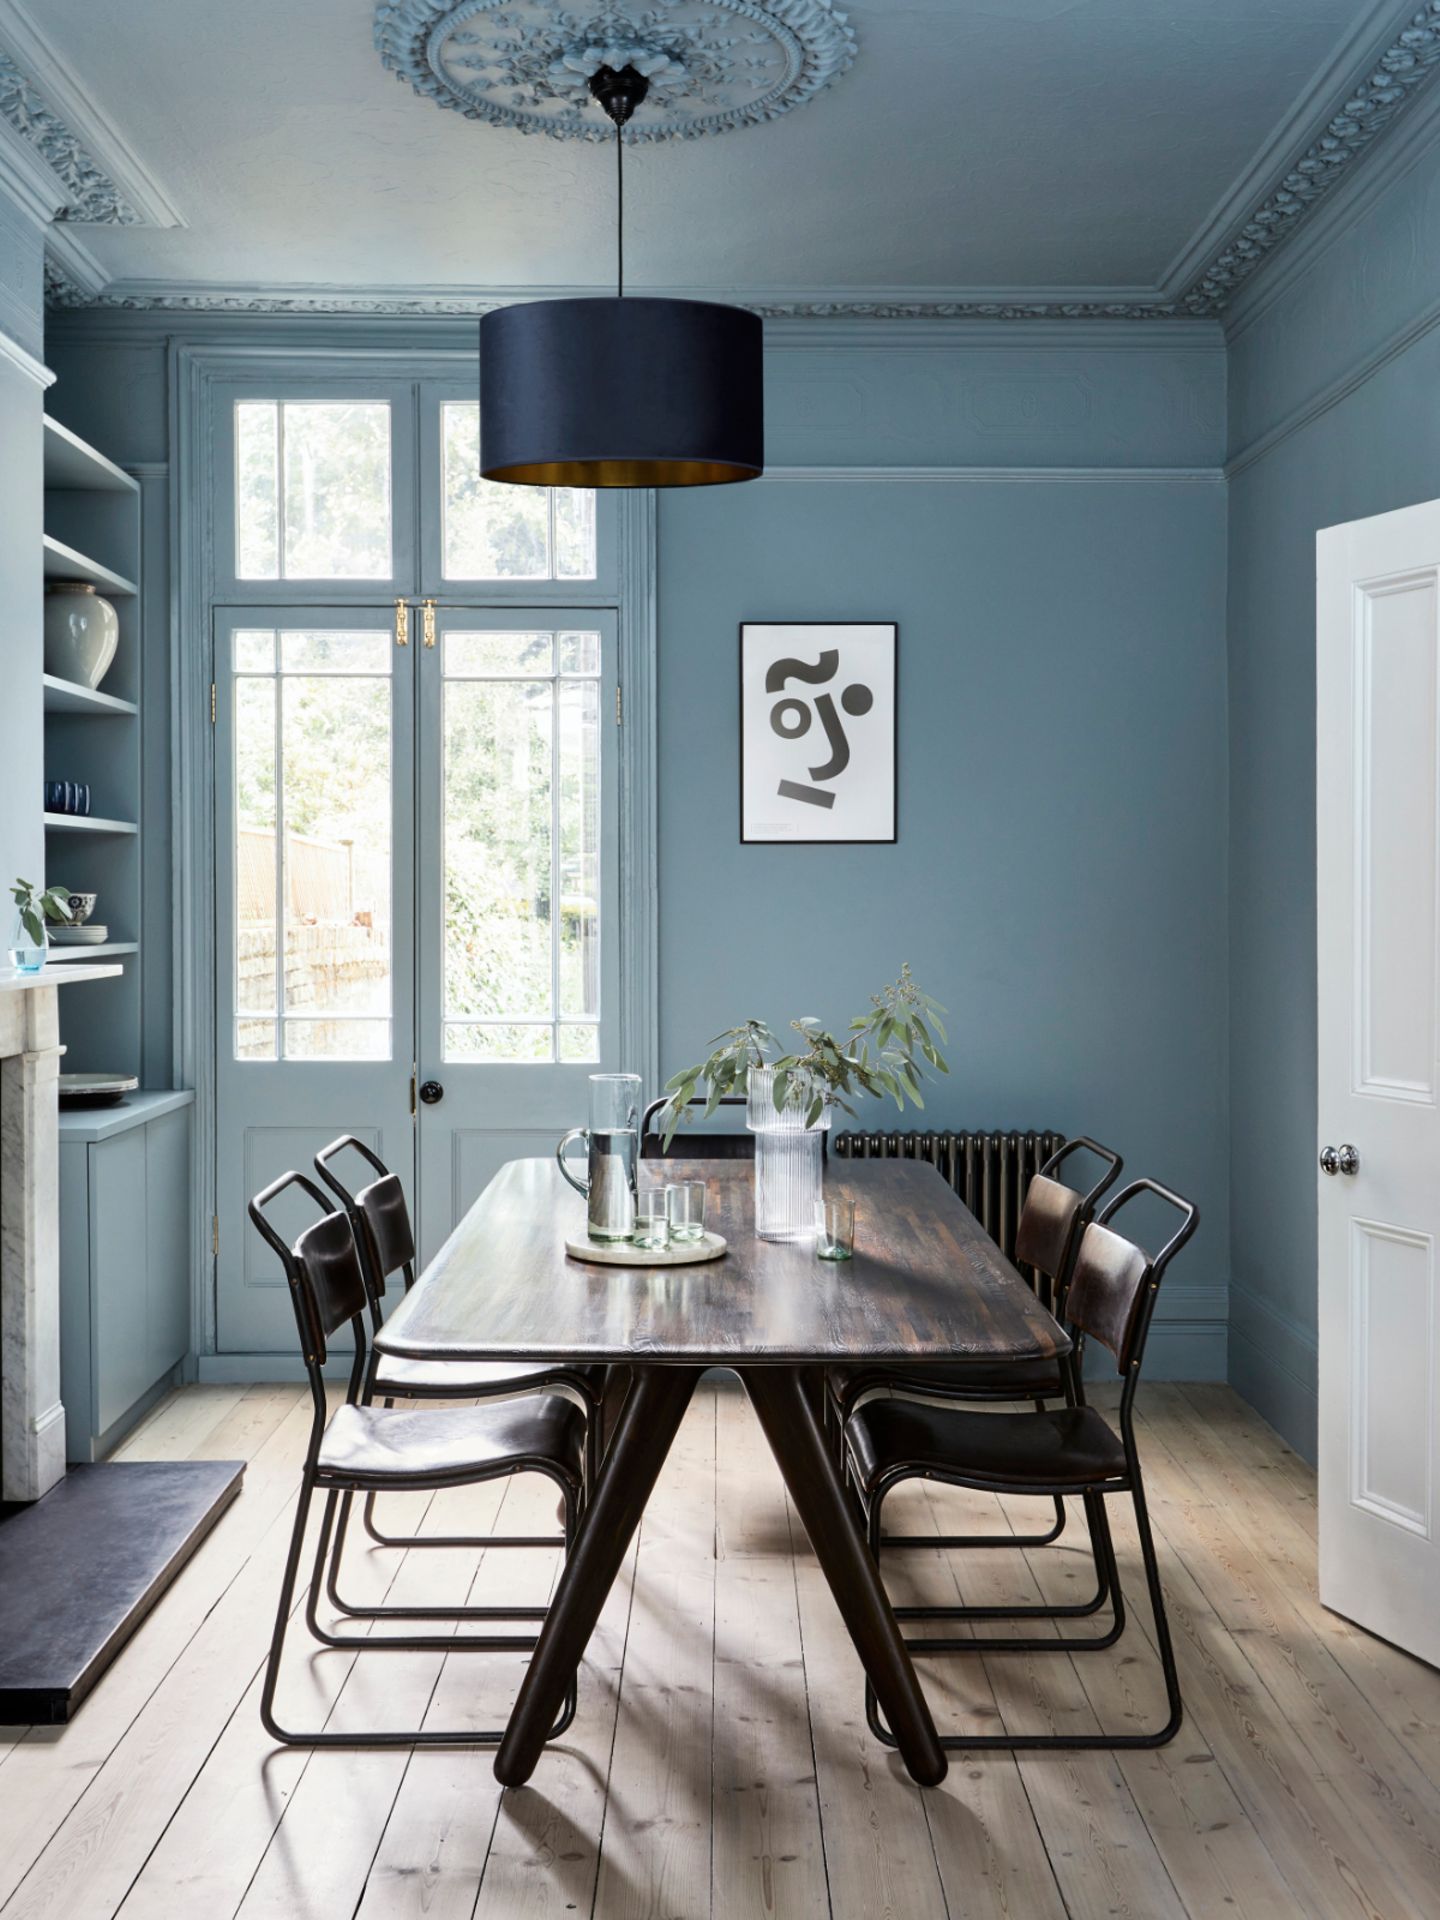 Esstisch mit Stühlen in Esszimmer mit Wand und Decke in einheitlichem Blaugrau